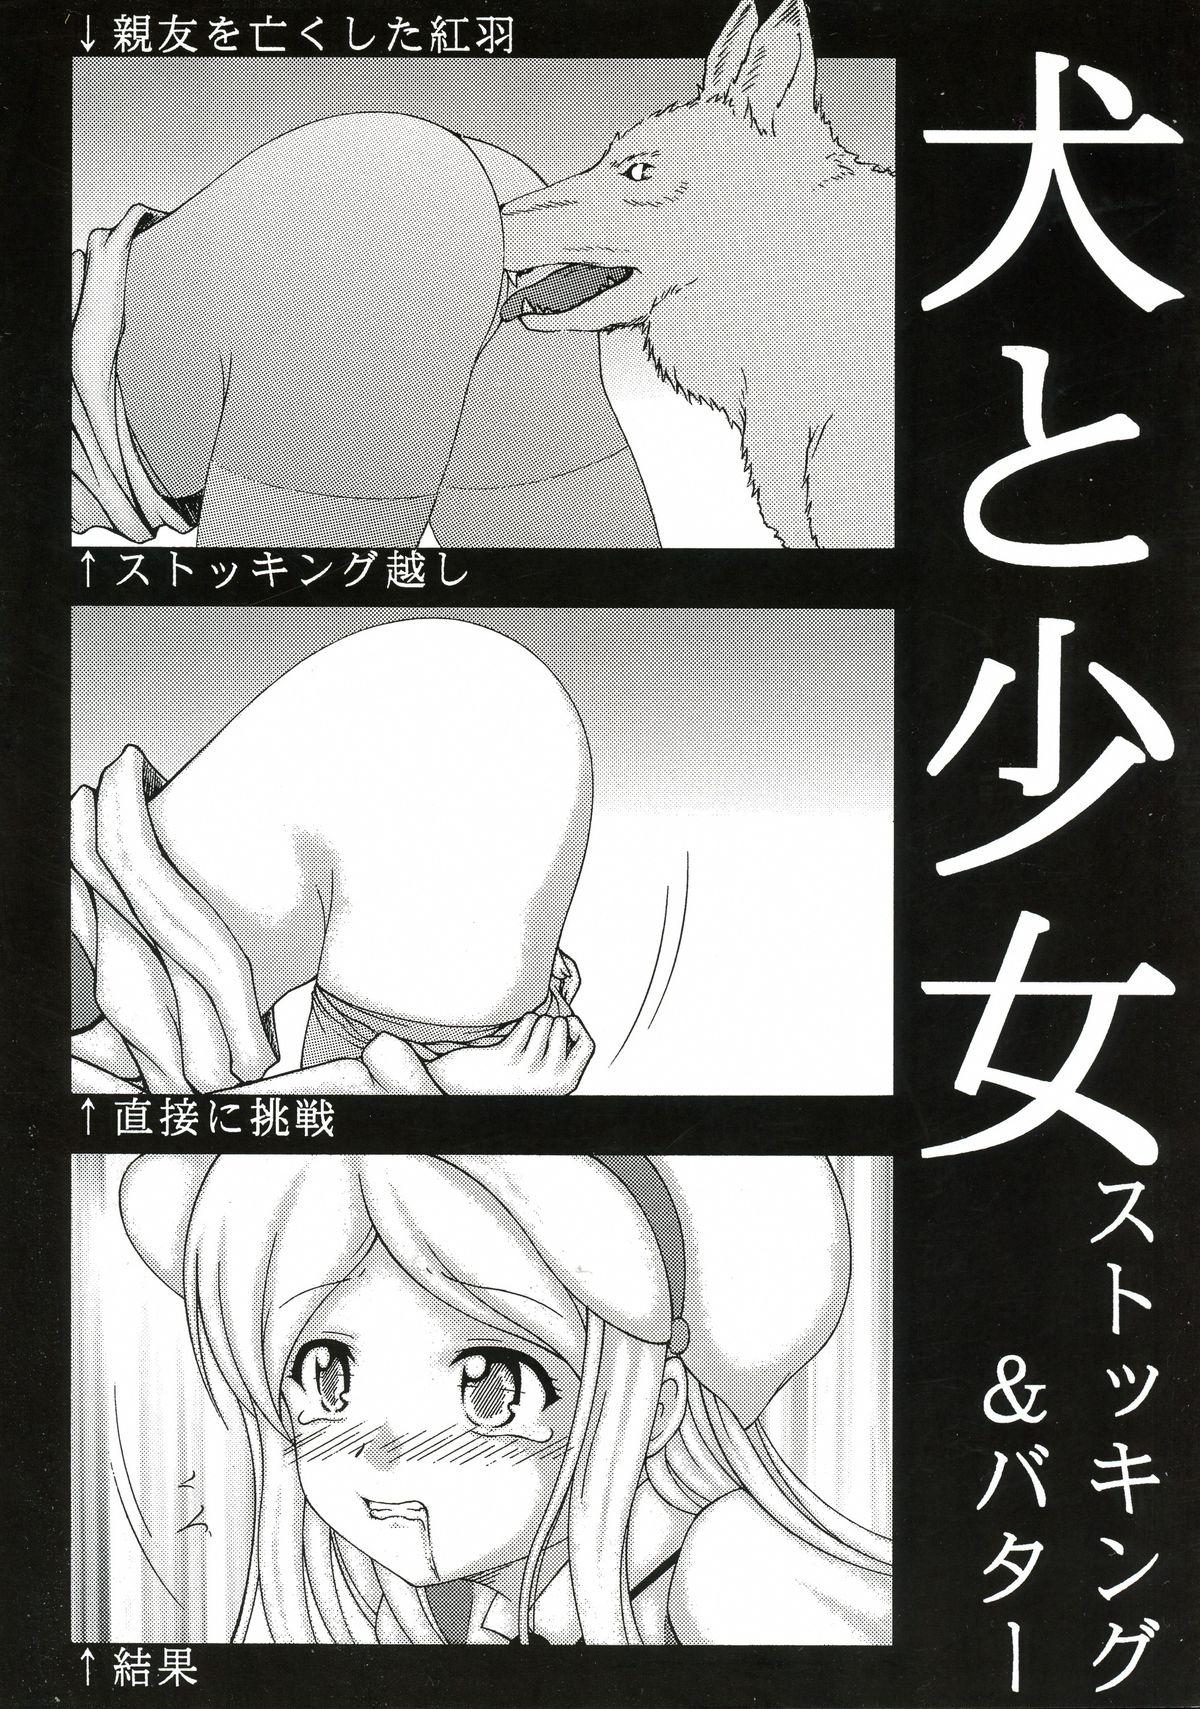 Adult Inu to Shoujo Stockings - Yurikuma arashi Tia - Picture 1